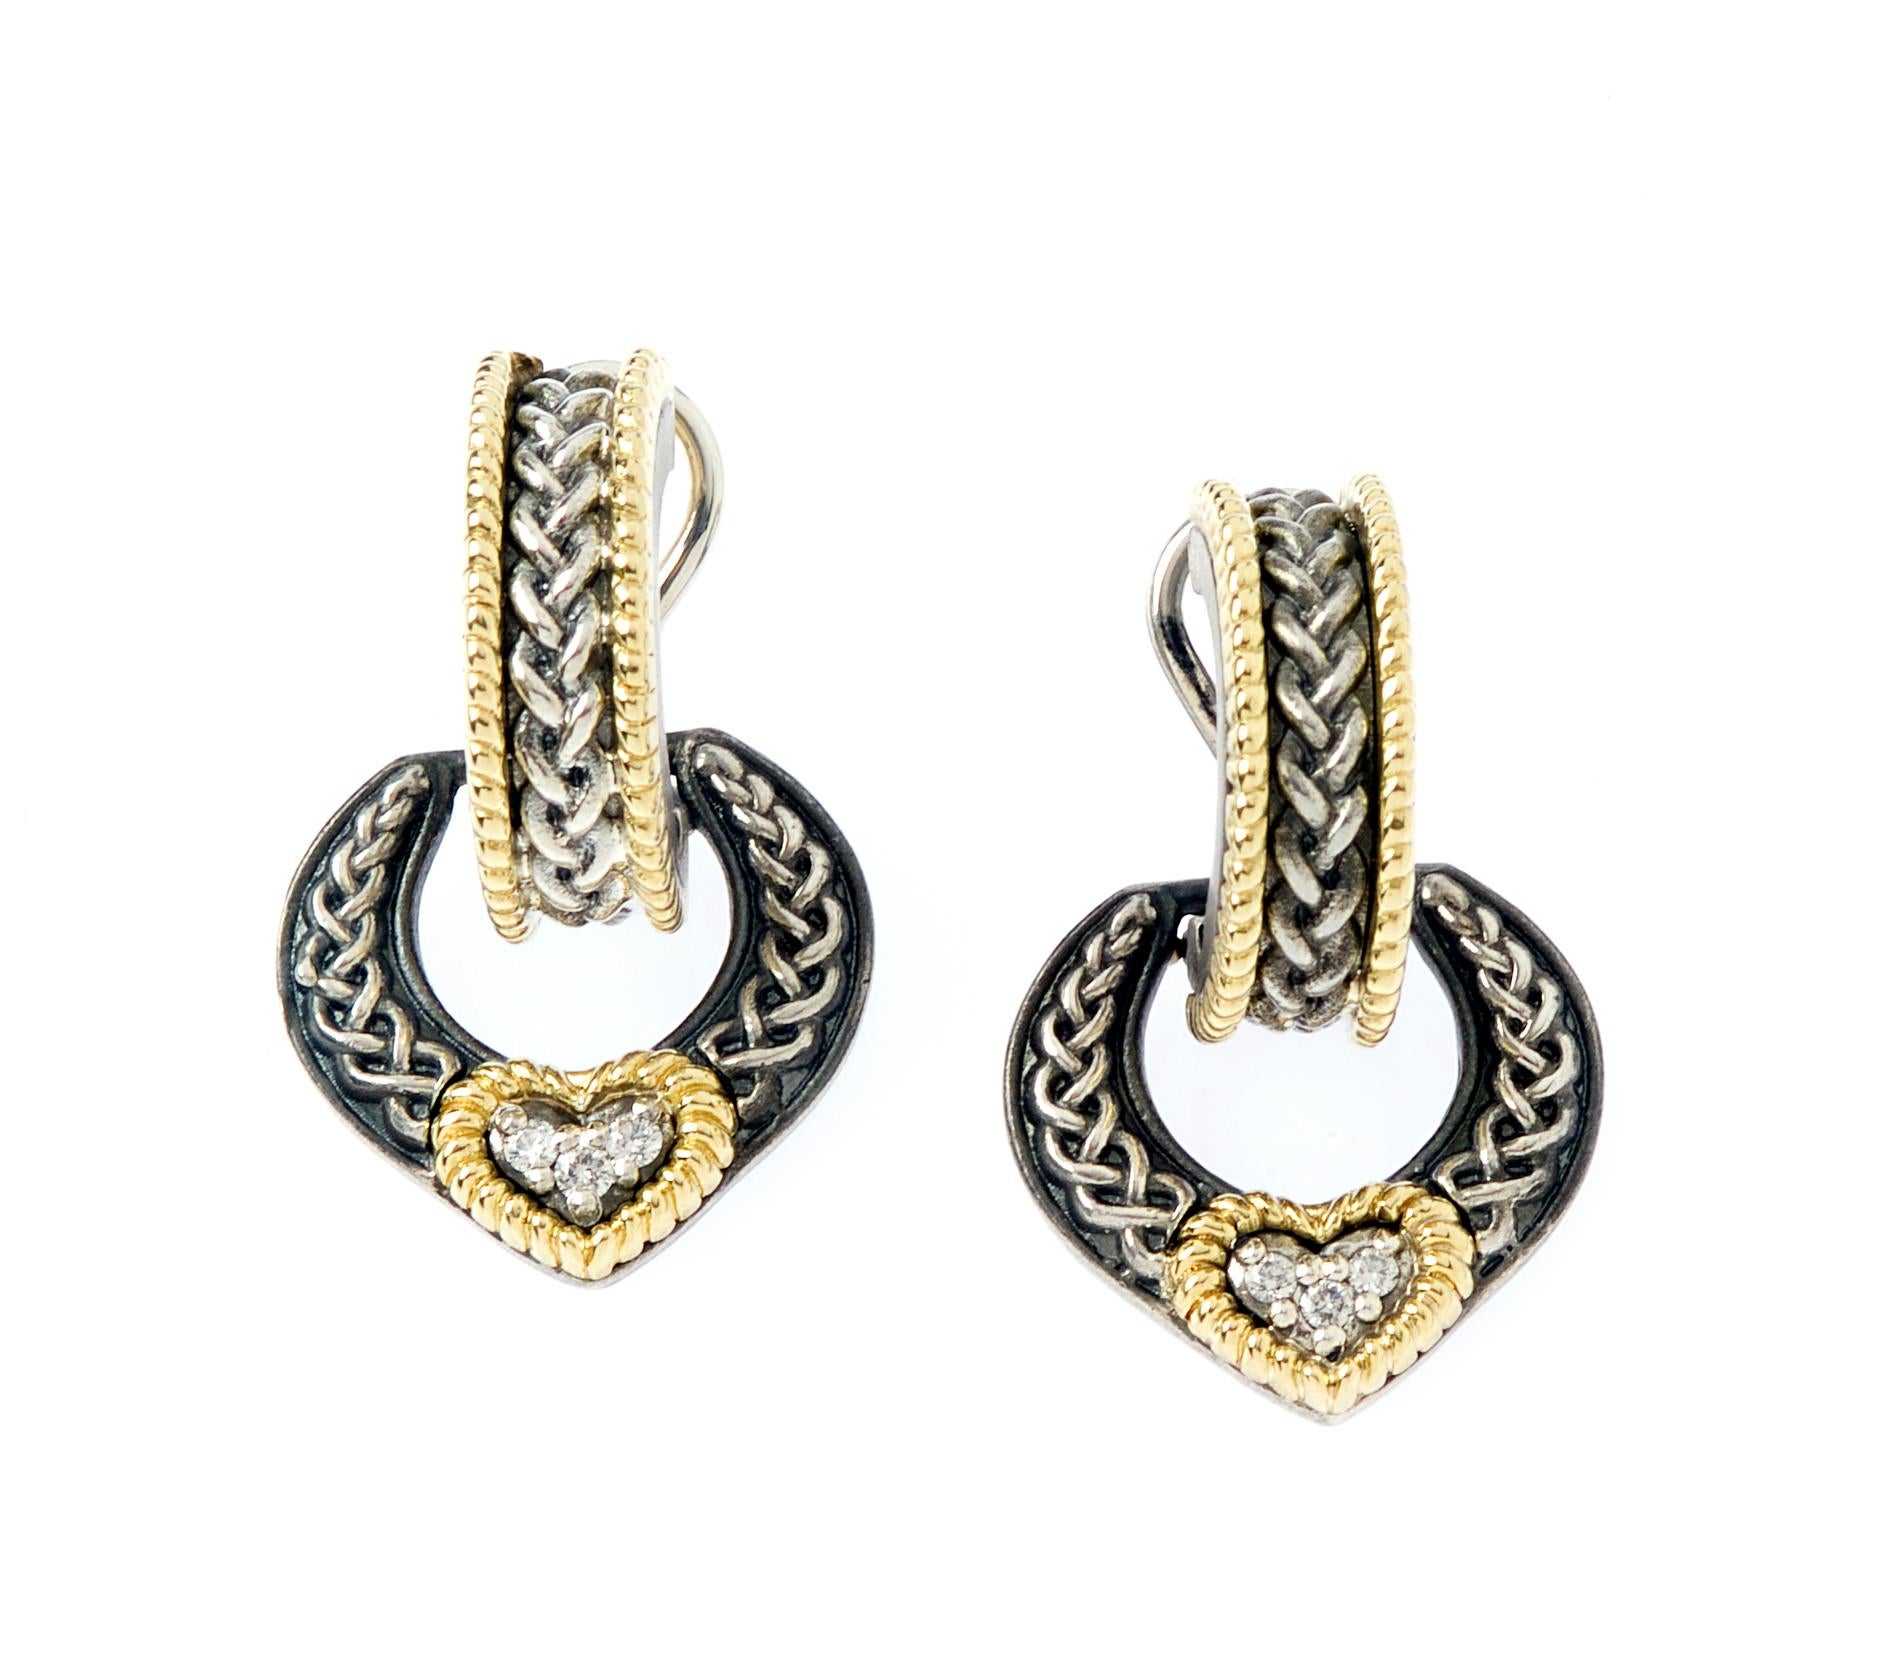 Round Cut Stambolian Sterling Silver 18 Karat Gold Diamond Heart Dangle Earrings